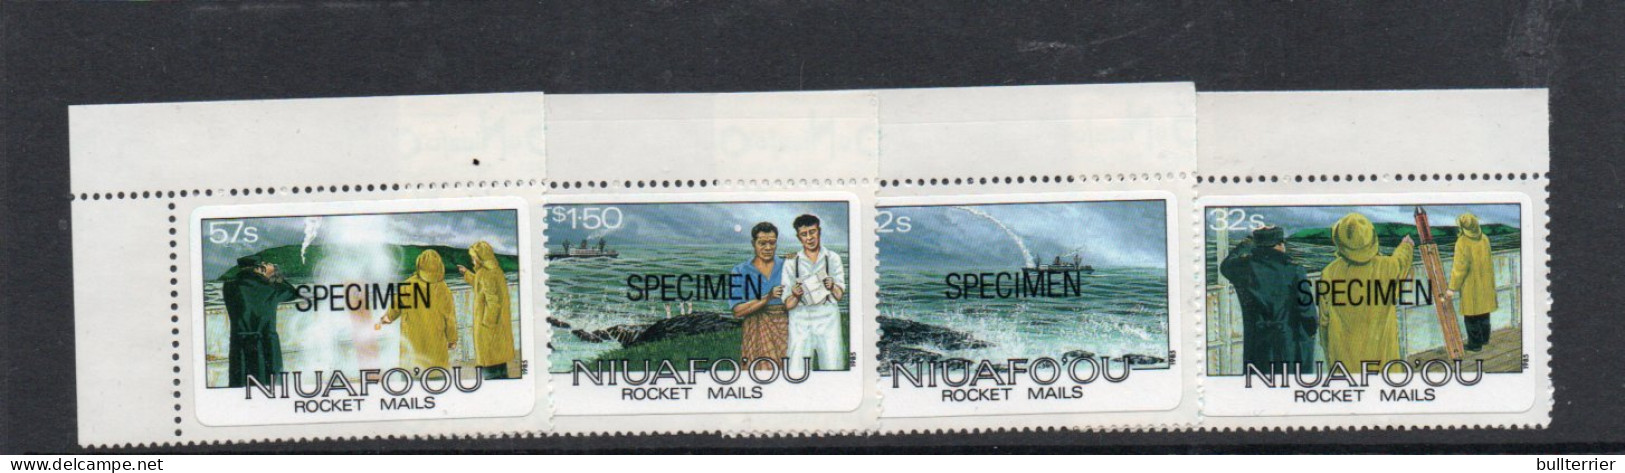 NIUAFOOU - 1985 - ROCKET MAILS SET OF 4   " SPECIMENS"  MINT NEVER HINGED  - Sonstige - Ozeanien